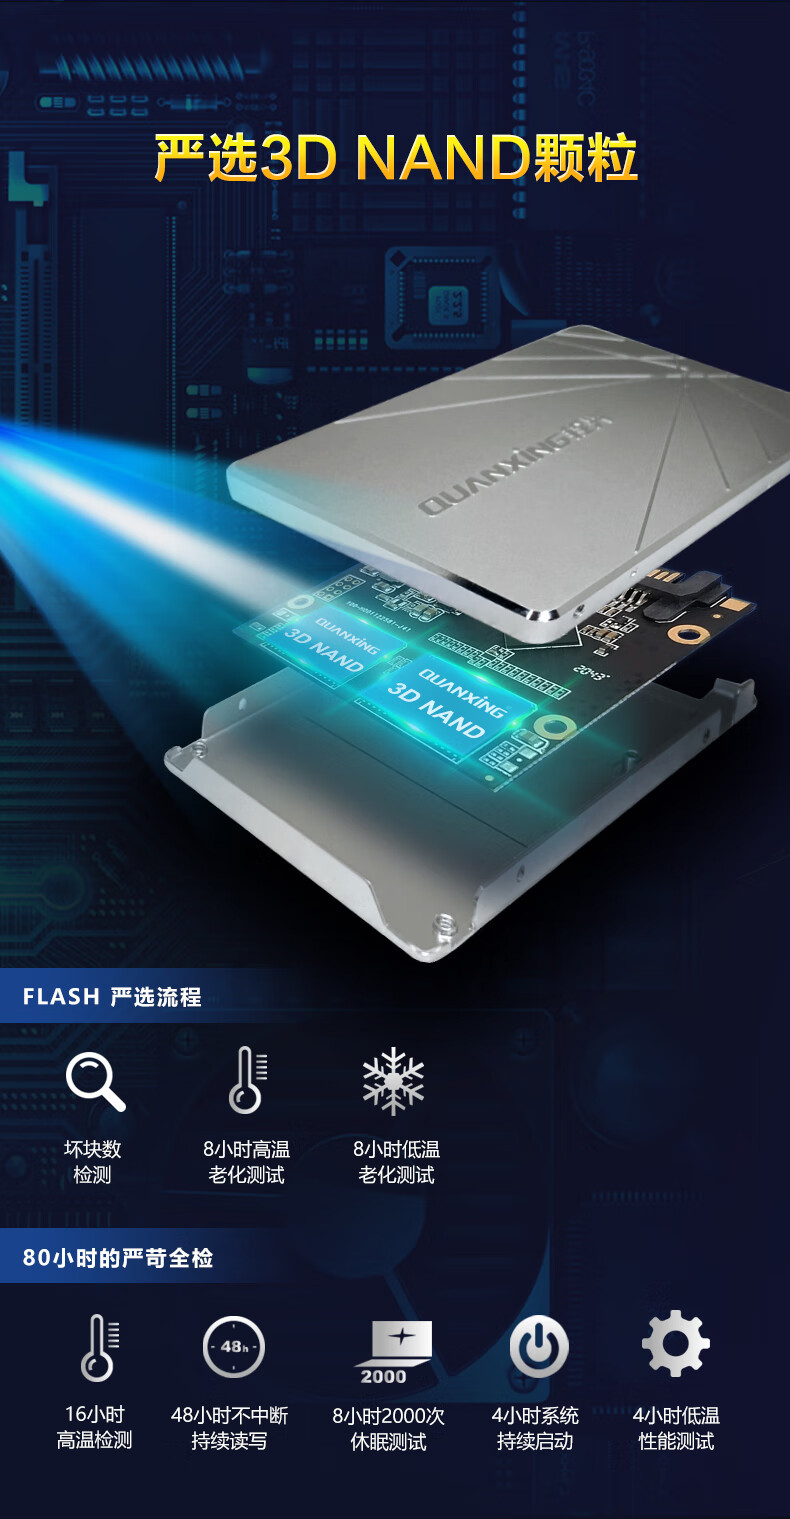 铨兴（QUANXING） SSD固态硬盘 2.5英寸SATA3.0接口 S101系列笔记本台式机升级 128G 银色 读550MB/S 写450MB/S